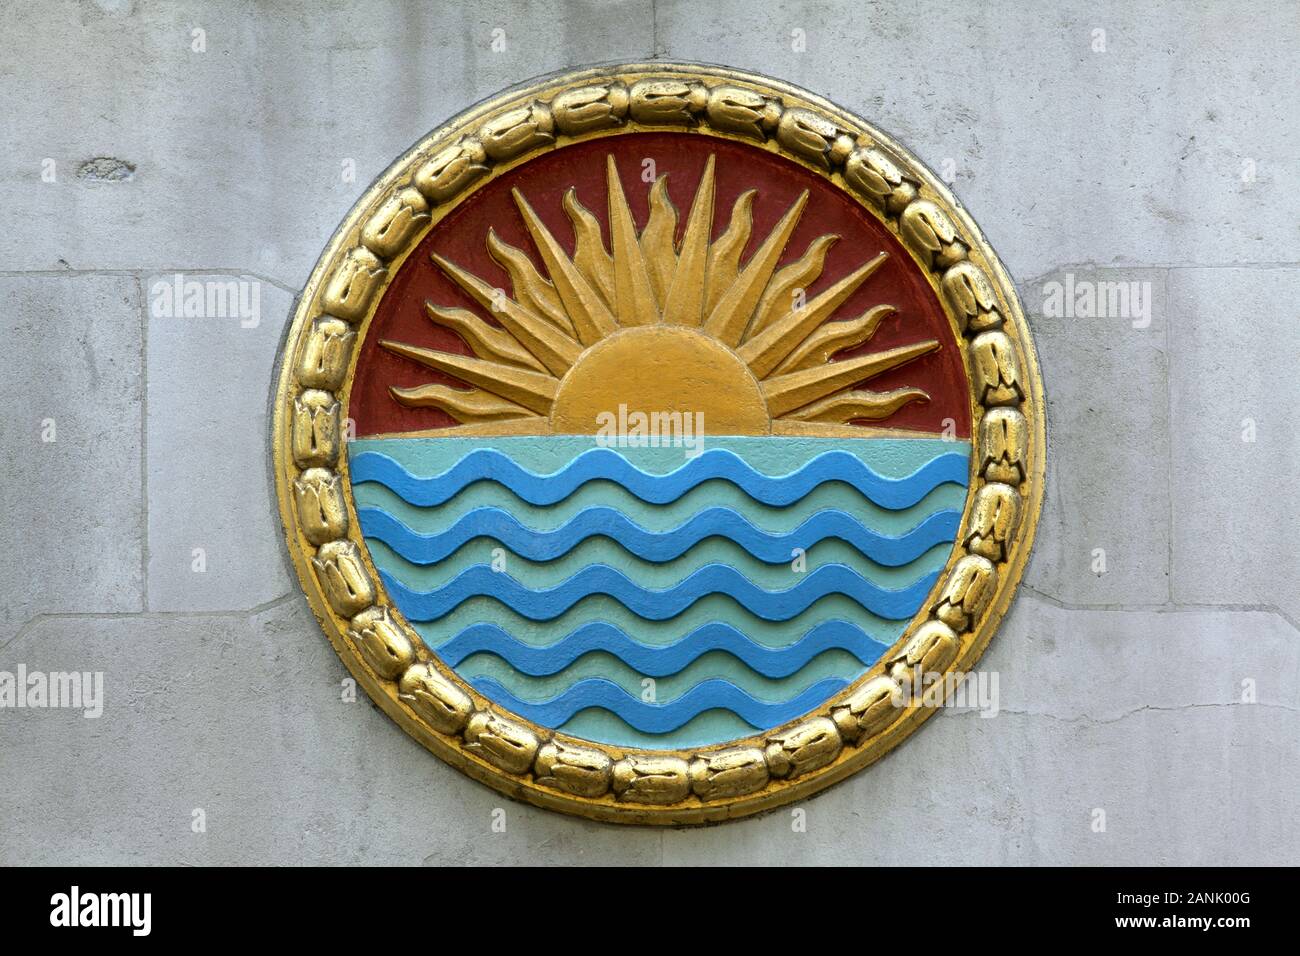 Eine von mehreren runden Platten an der Seite von Indien Haus, Aldwych, London. Dieses Zimmer verfügt über eine Sonne (oder Einstellung?) über Wasser. Stockfoto